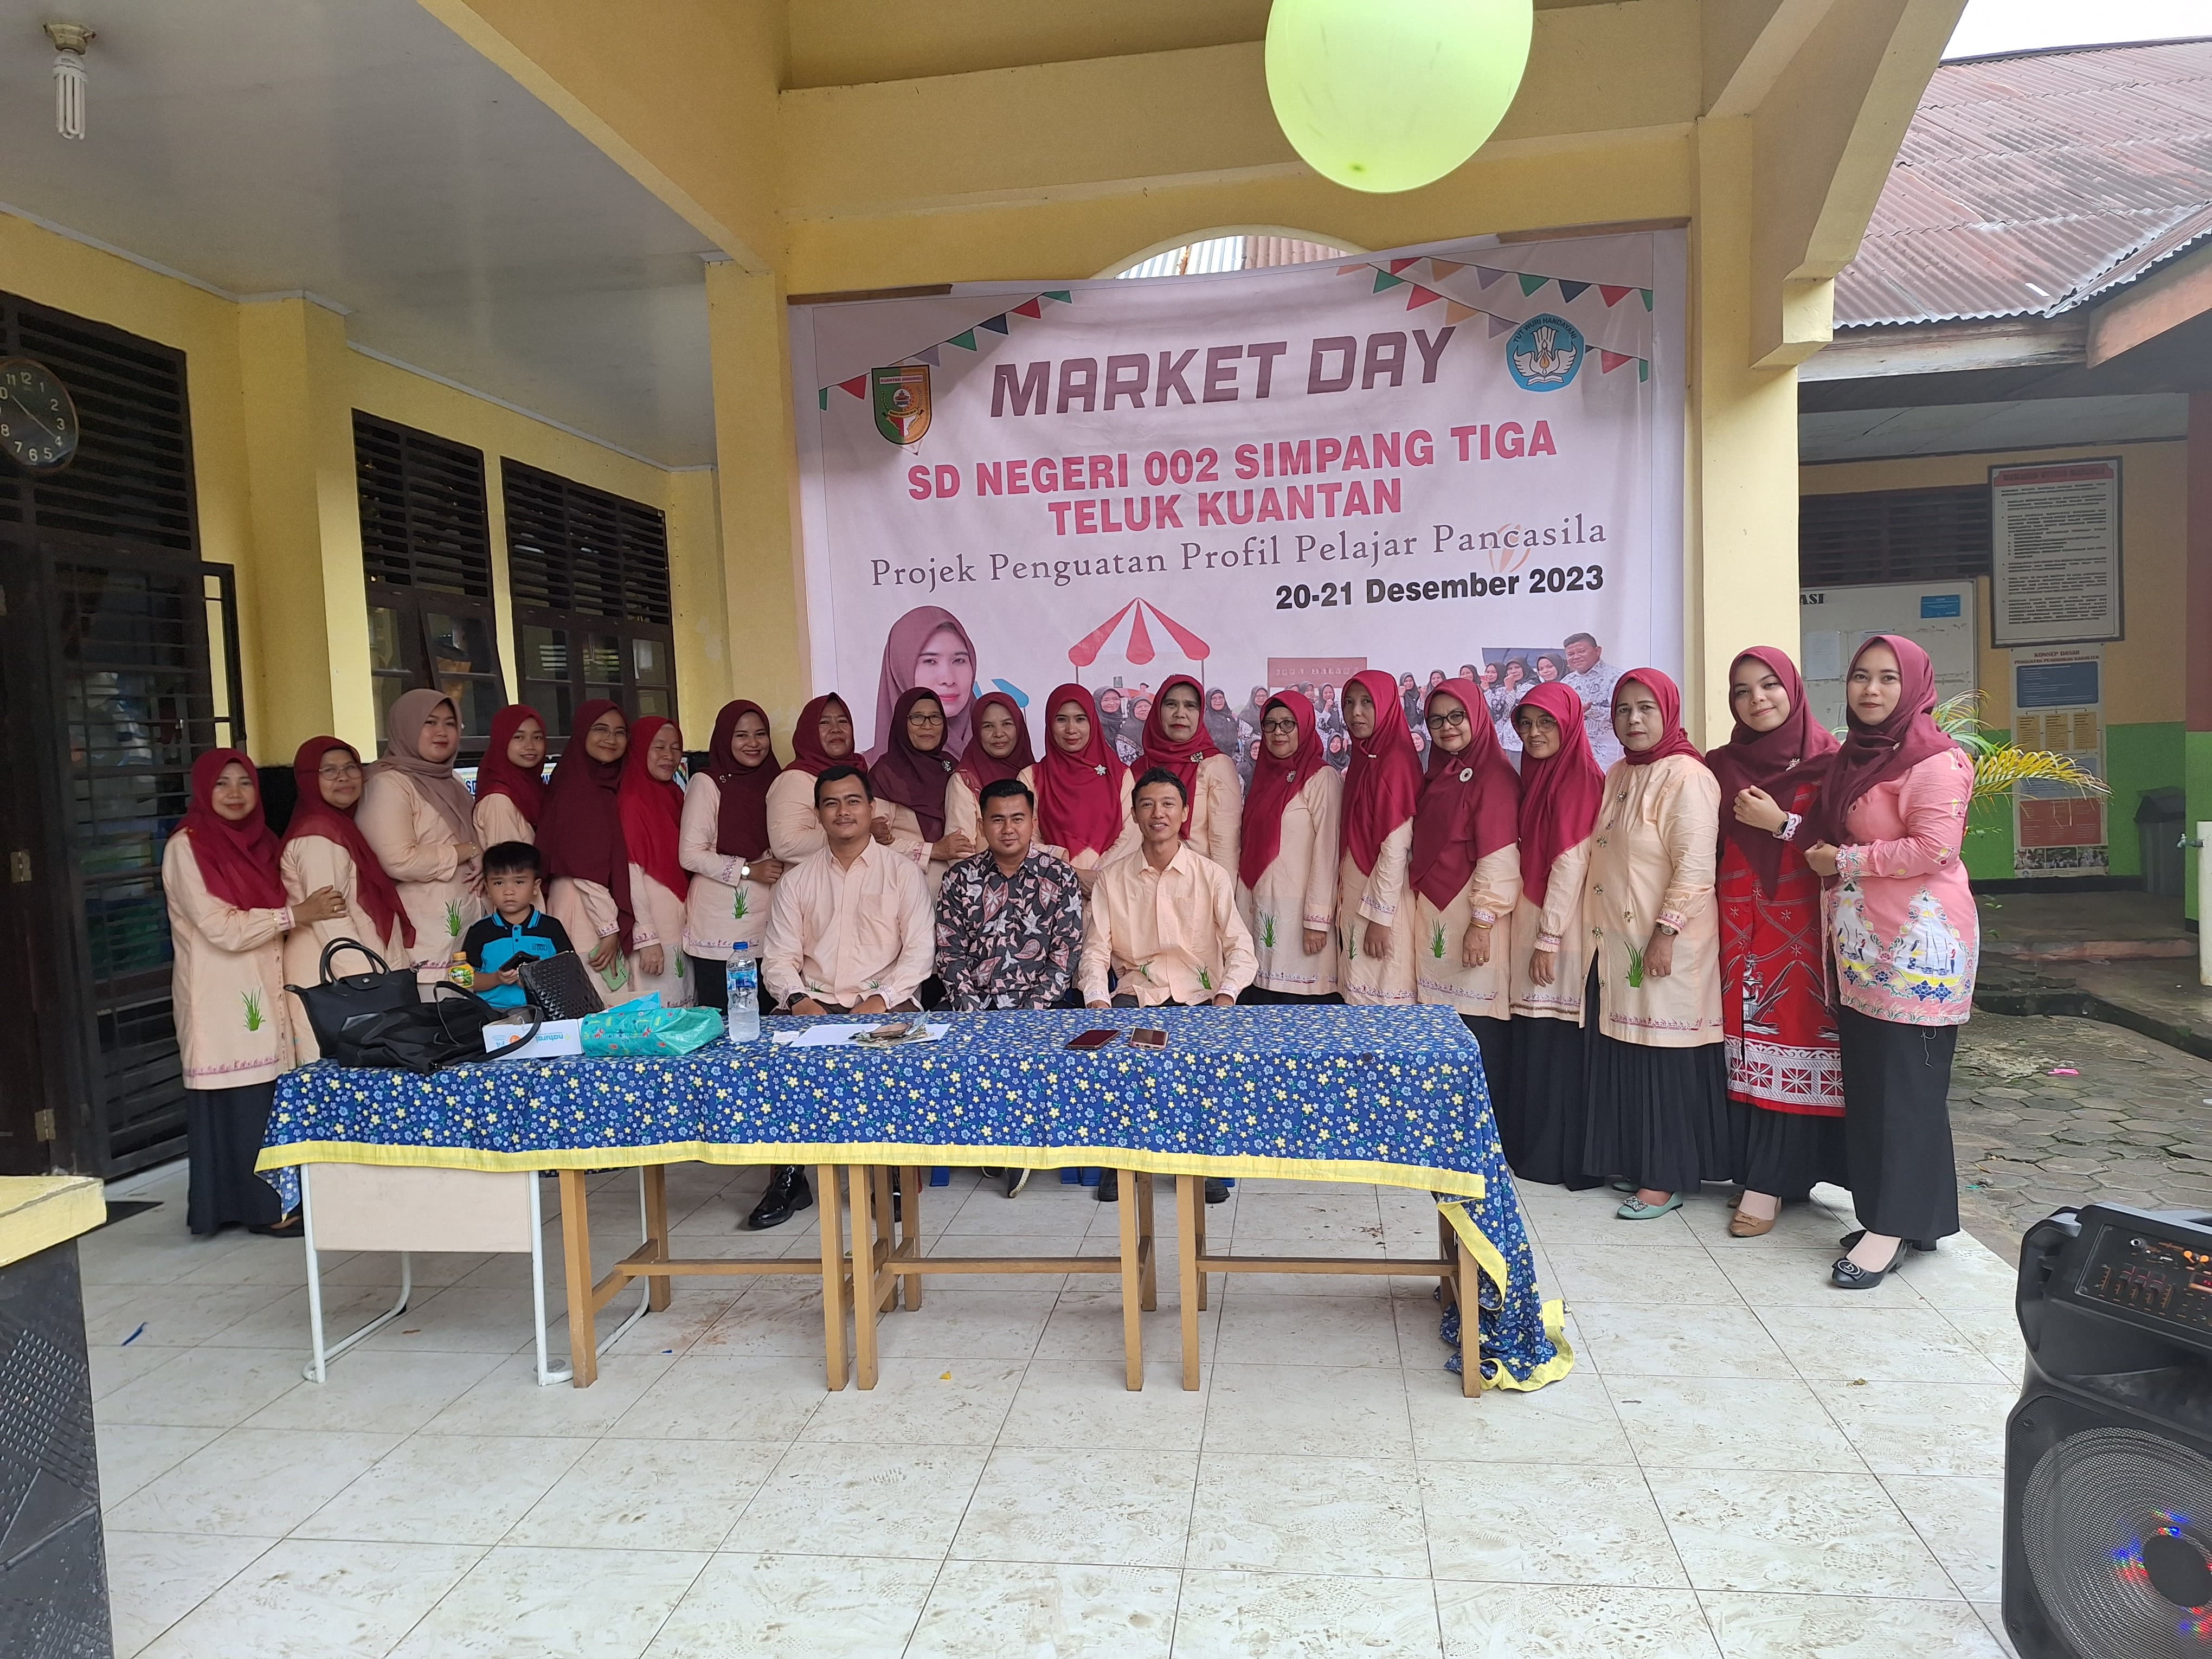 Tumbuhkan Bakat dan Minat Murid di Bidang Wirausaha SDN 002 Teluk Kuantan Adakan Market Day 